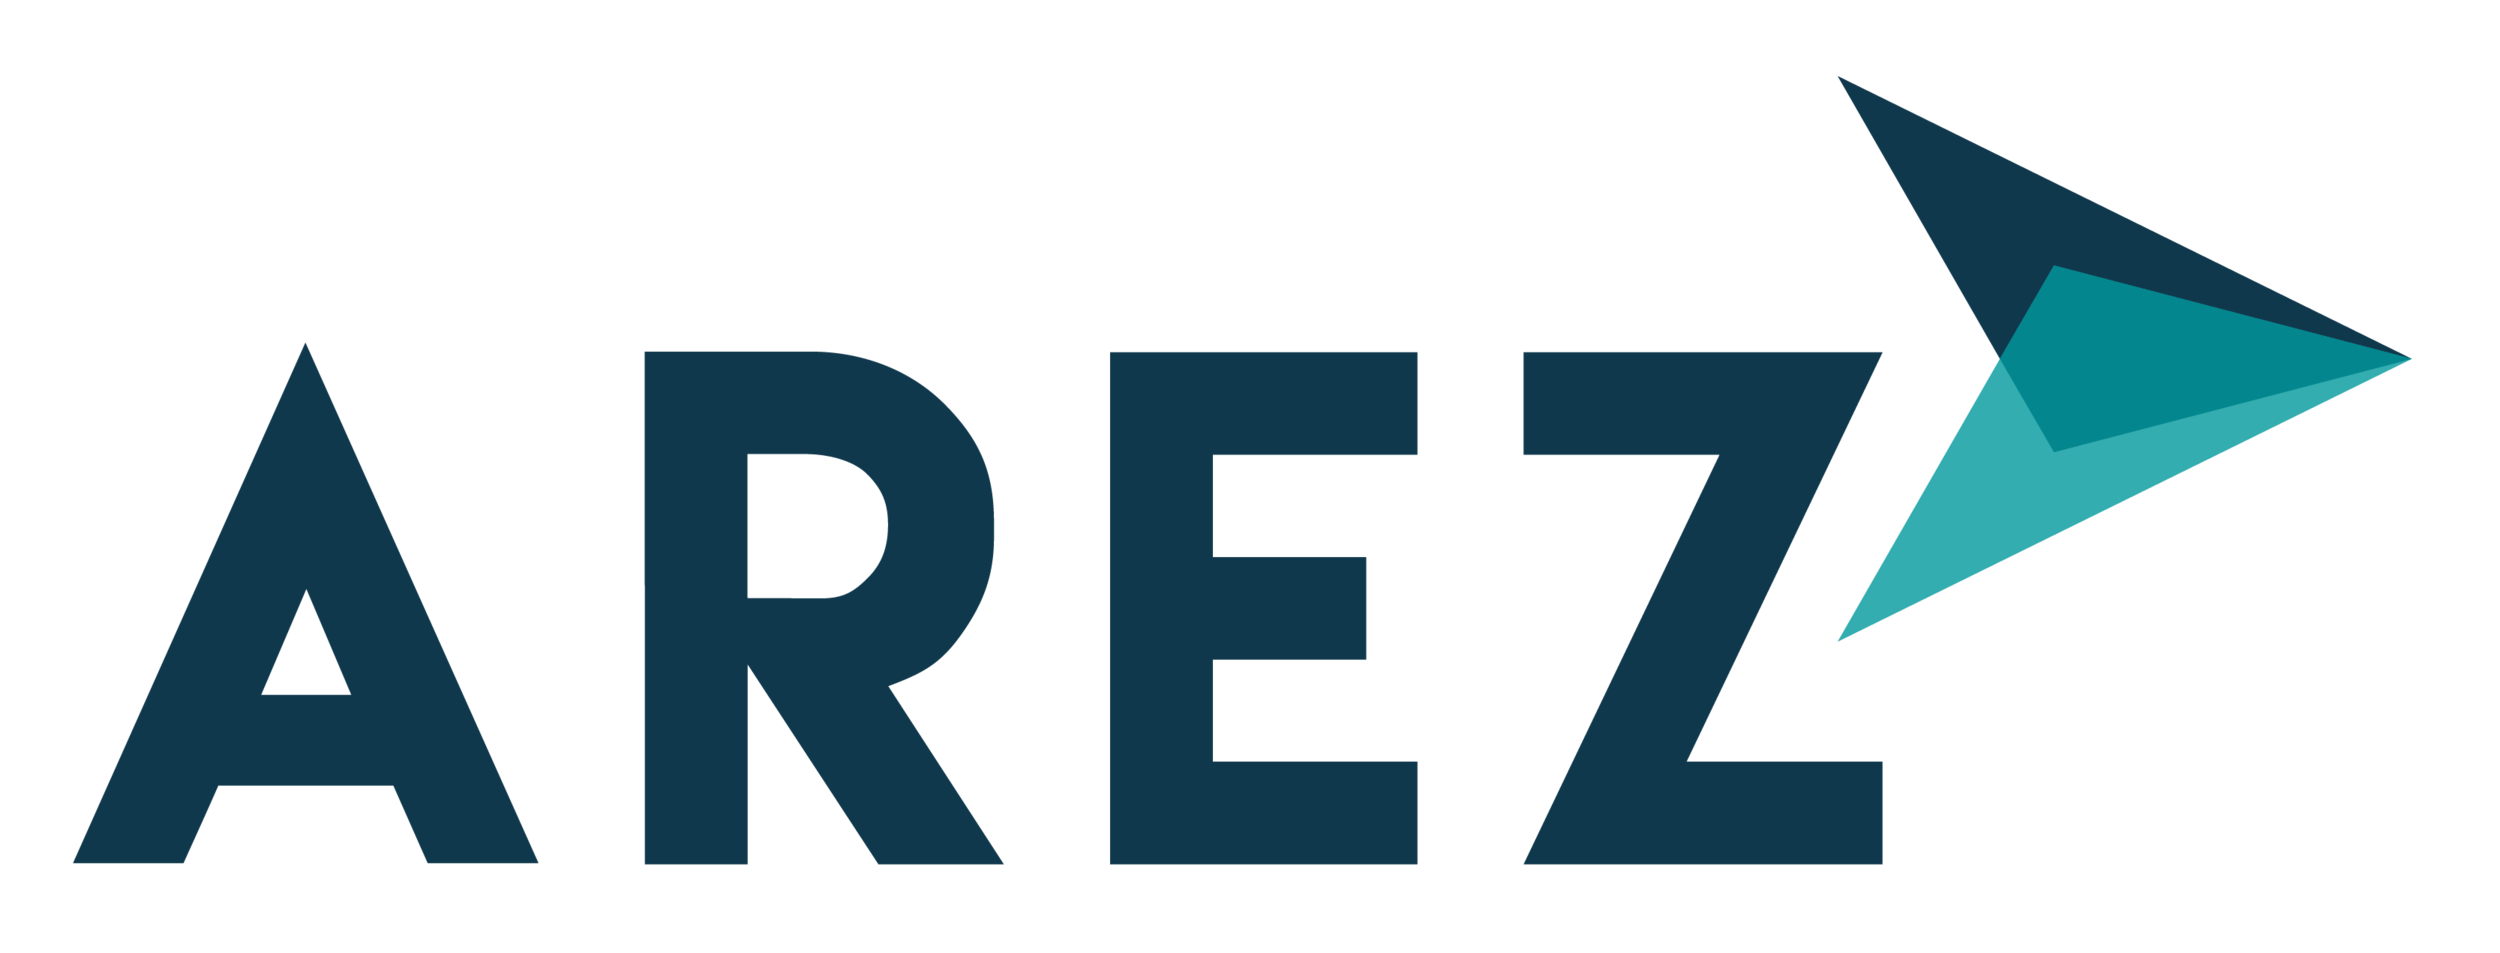 Arez-logo.png